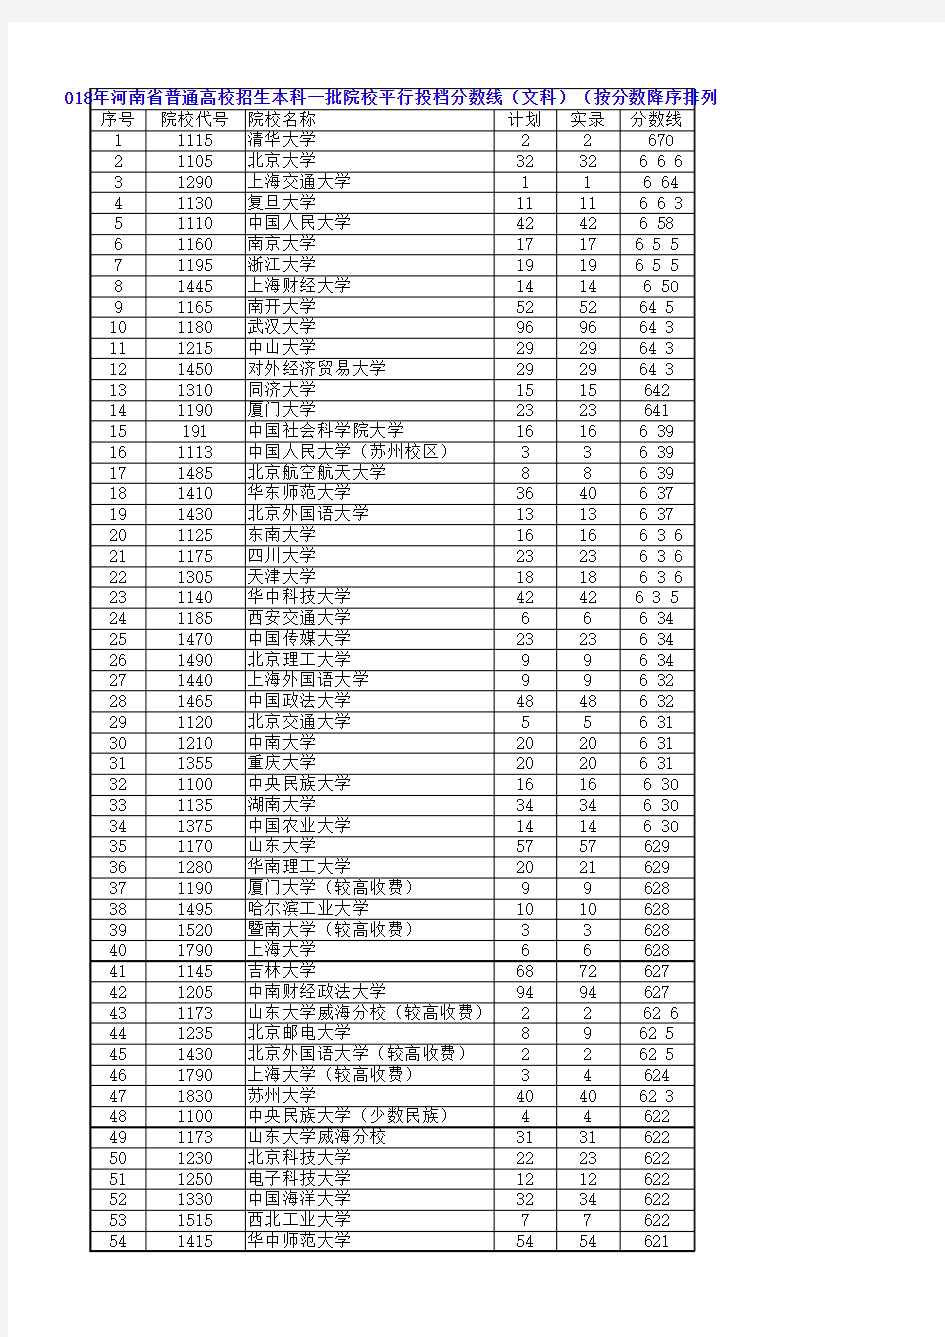 2018年河南省高考普通类本科一批投档线排序版(文科)